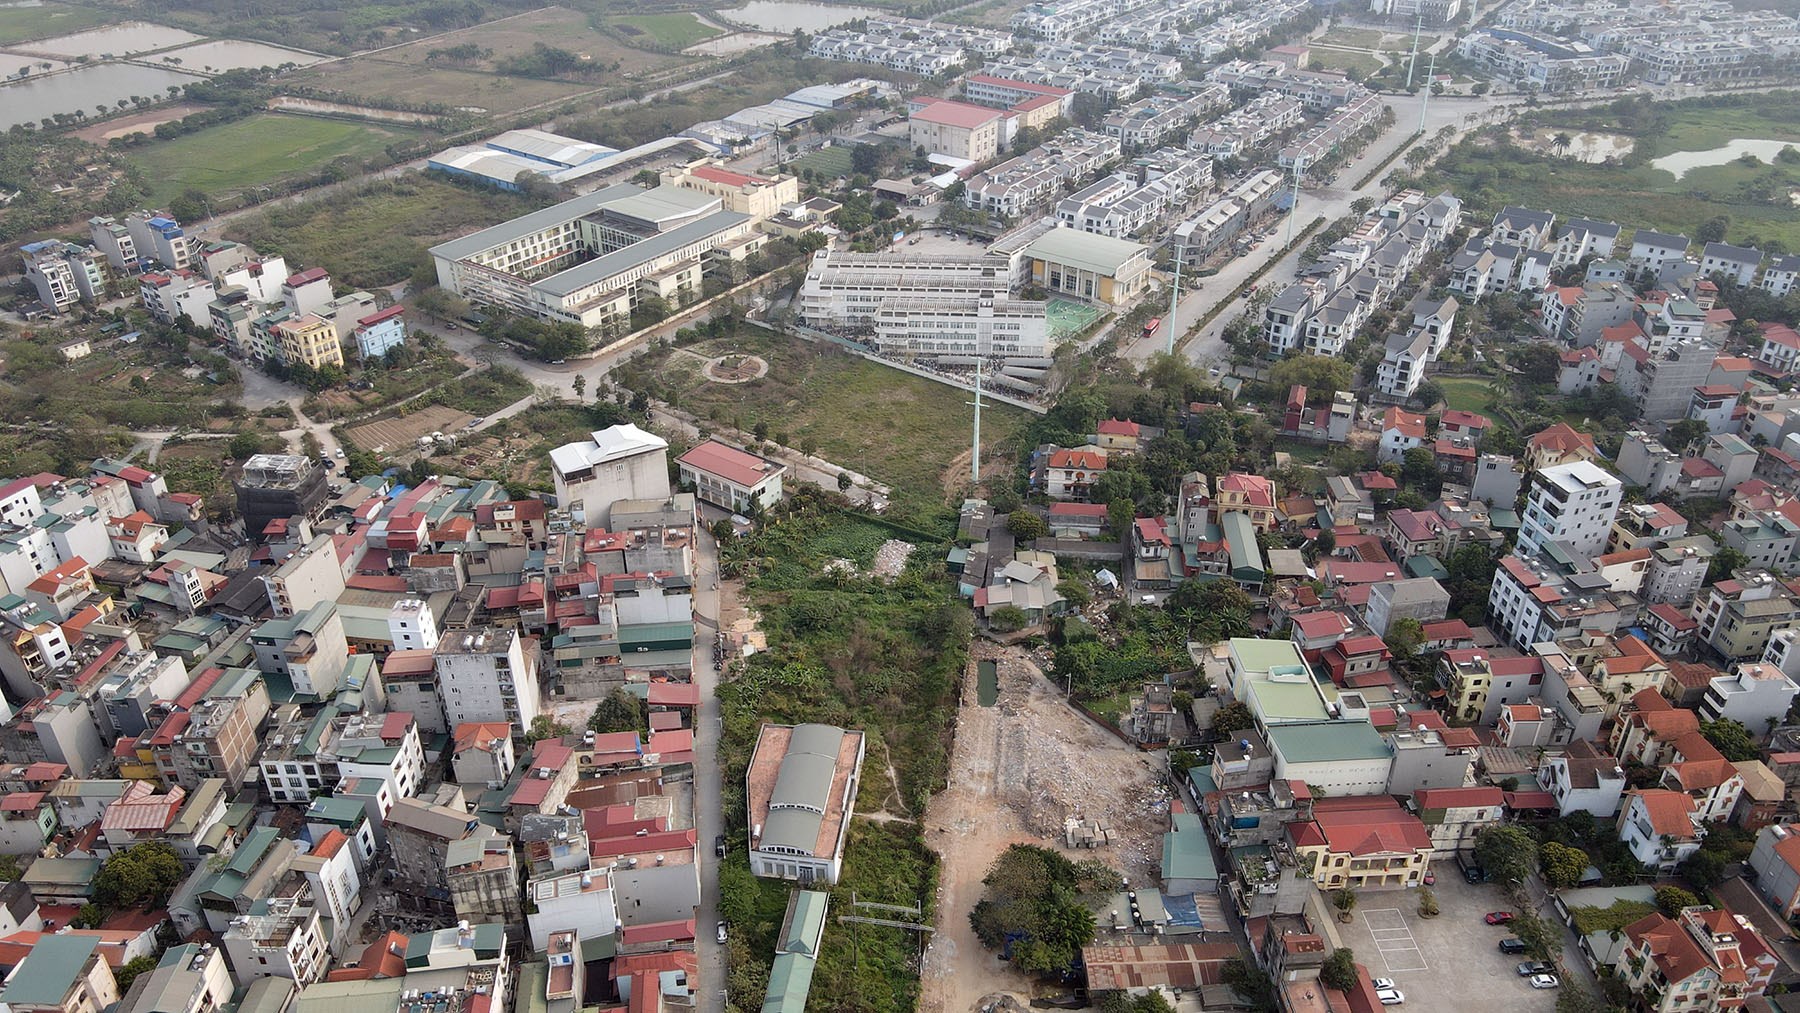 Hình ảnh đường nối khu đô thị Xuân Phương đi quốc lộ 32 sau nhiều năm thi công